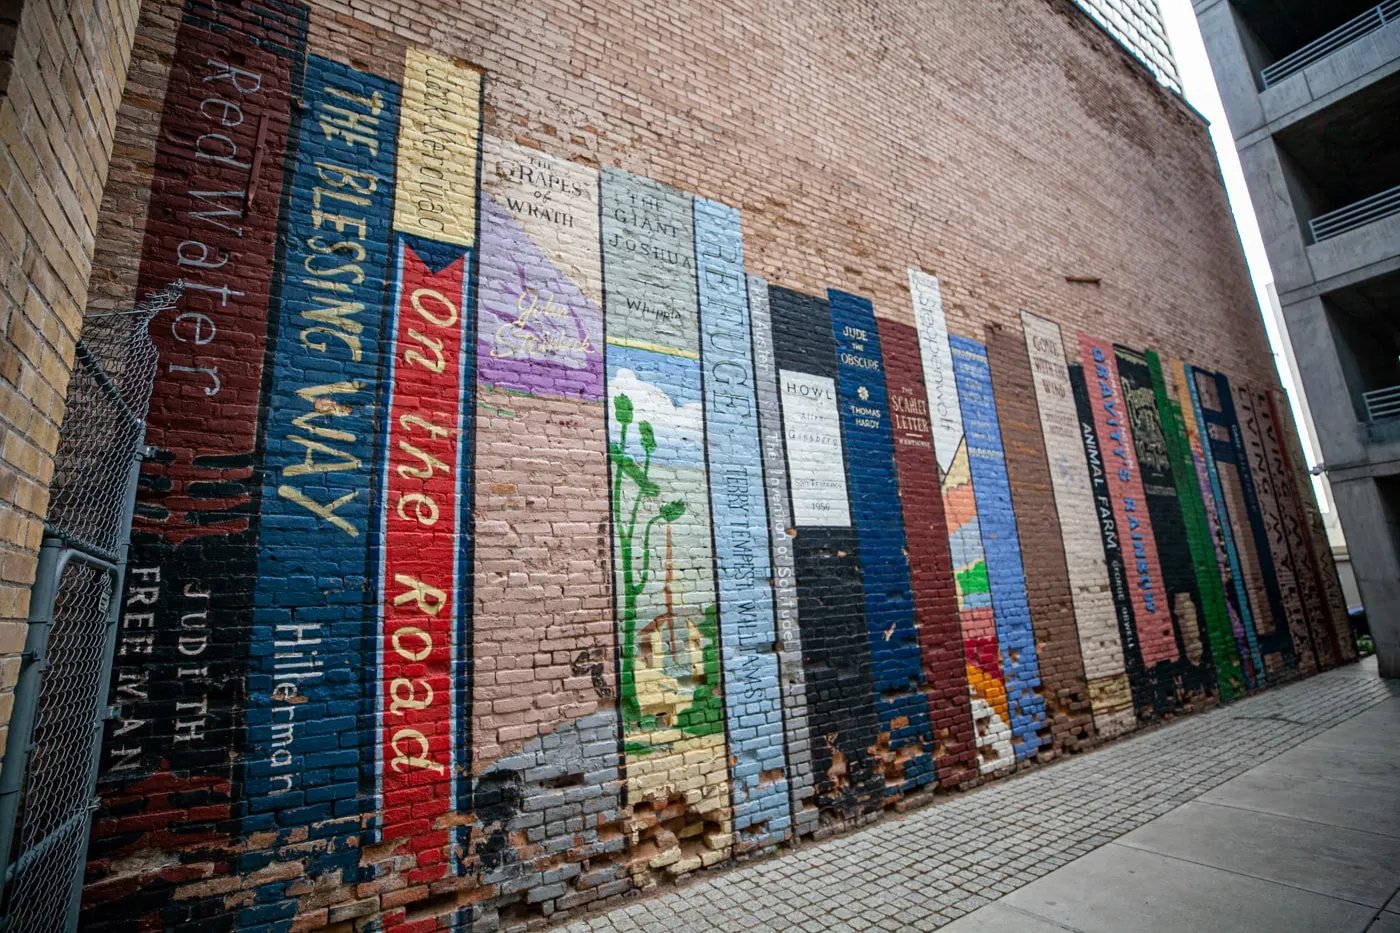 Wall of Books Mural in Salt Lake City, Utah | Book Mural at Eborn Books in Salt Lake City | Utah Murals